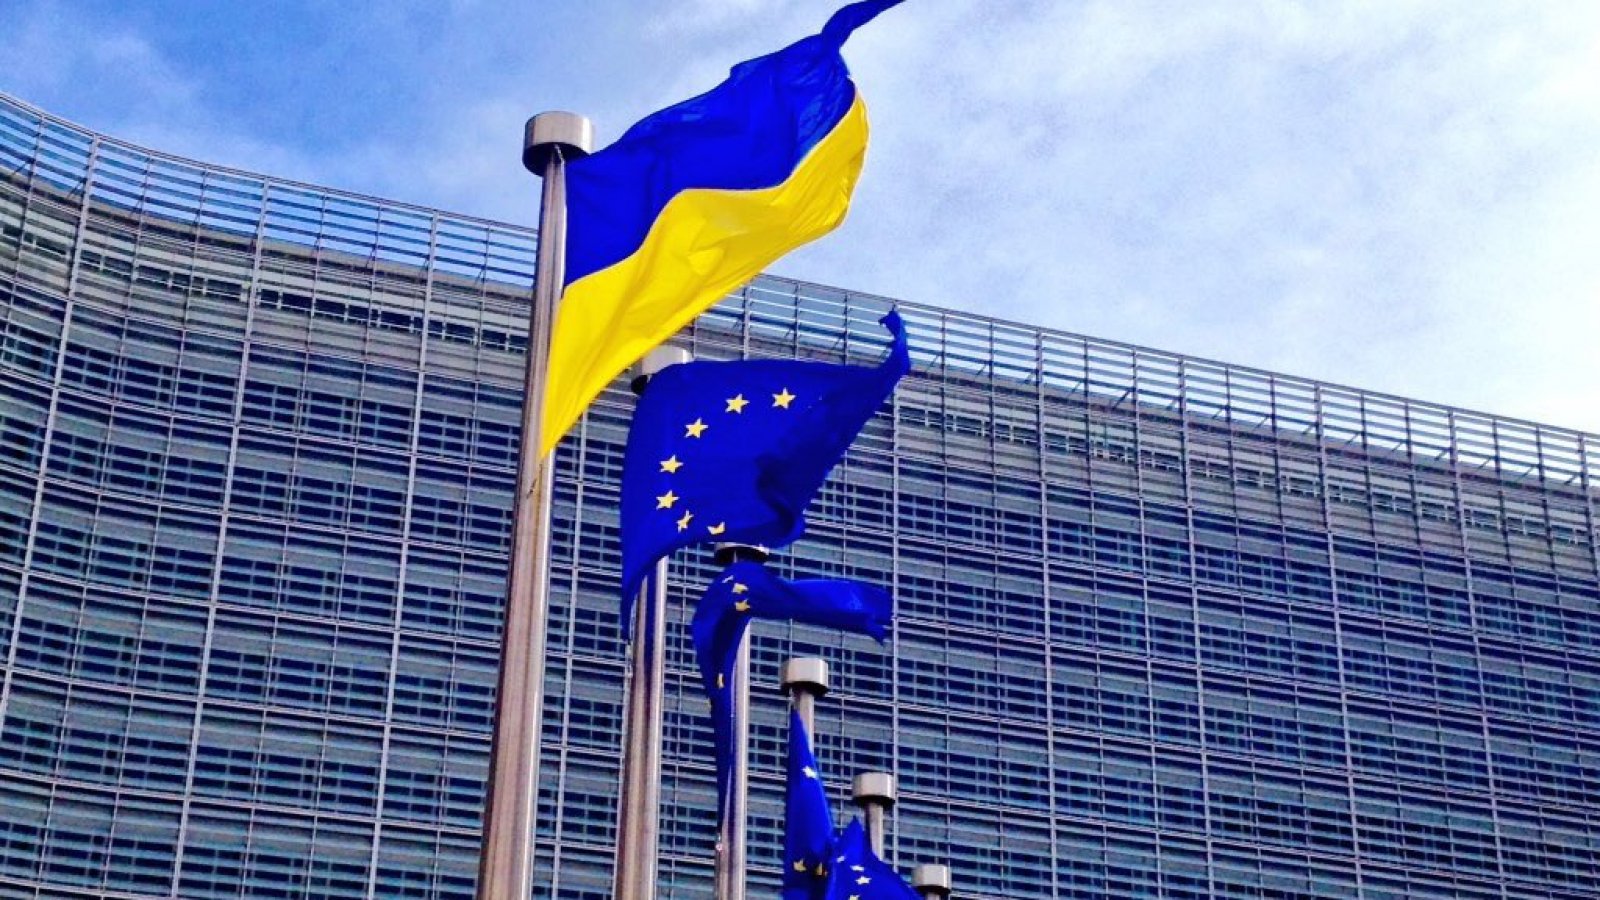 Զելենսկու գրասենյակը հայտարարել է, որ Եվրամիությանն Ուկրաինայի անդամակցության դիմումն ընդունվել է